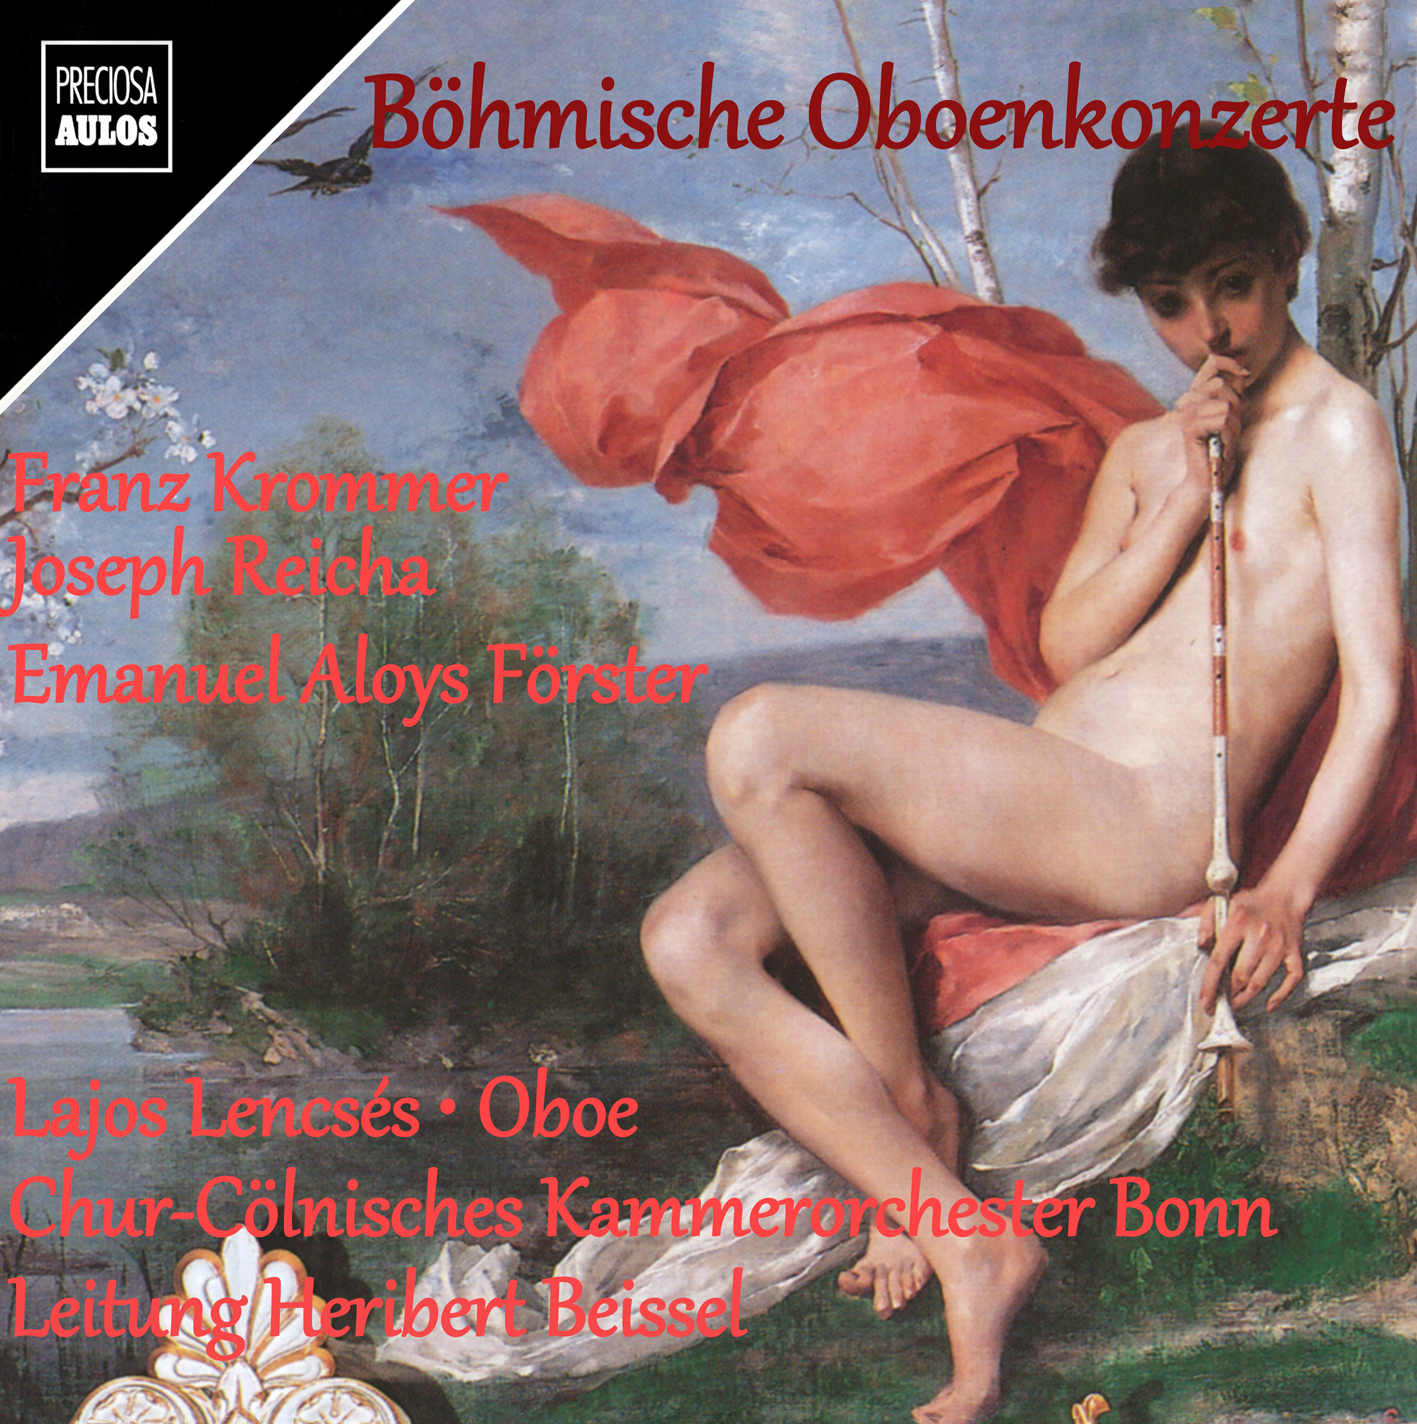 Böhmische Oboenkonzerte